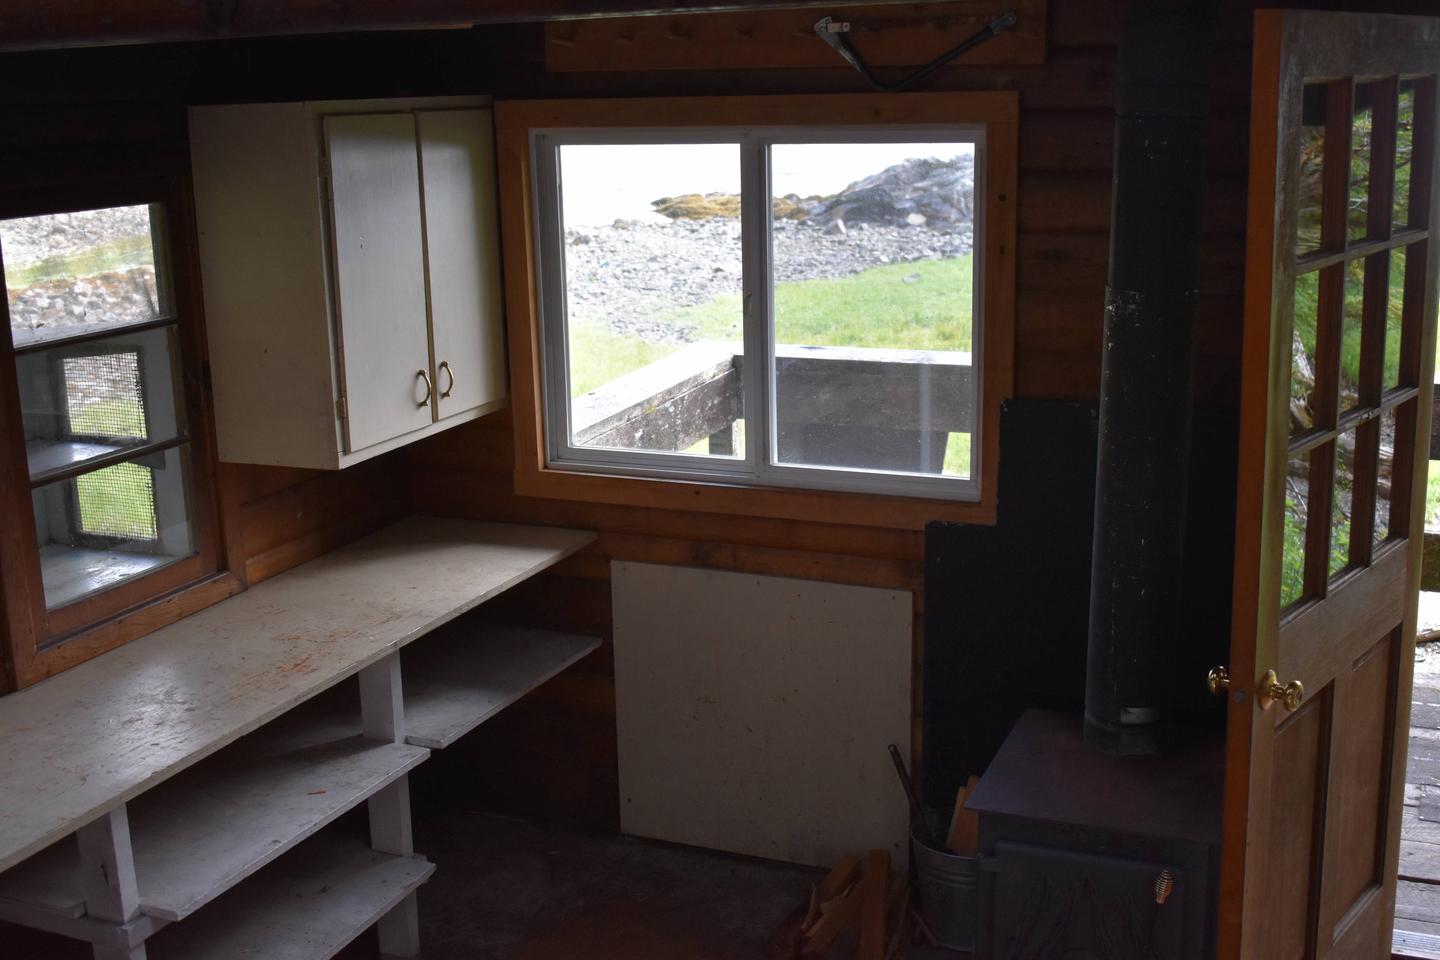 Kitchen AreaAlava Bay cabin kitchen area